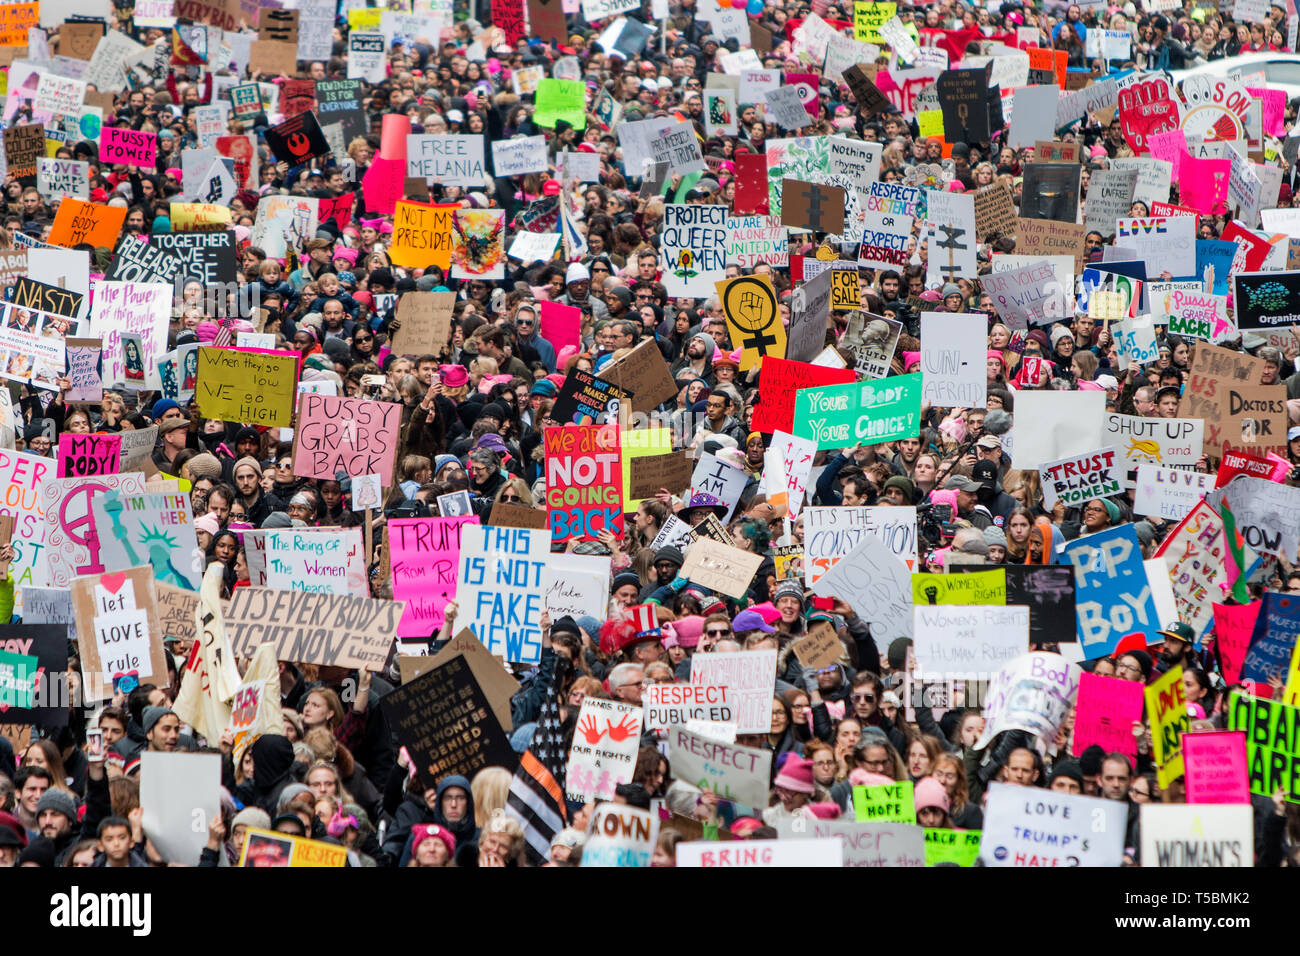 La marcha de mujeres del Washington el día después de la inauguración de Donald J. Trump generó un número récord de manifestantes en EEUU. Estas imágenes son de Nueva York, donde un estimado de 400-500.000 marcharon. Foto de stock